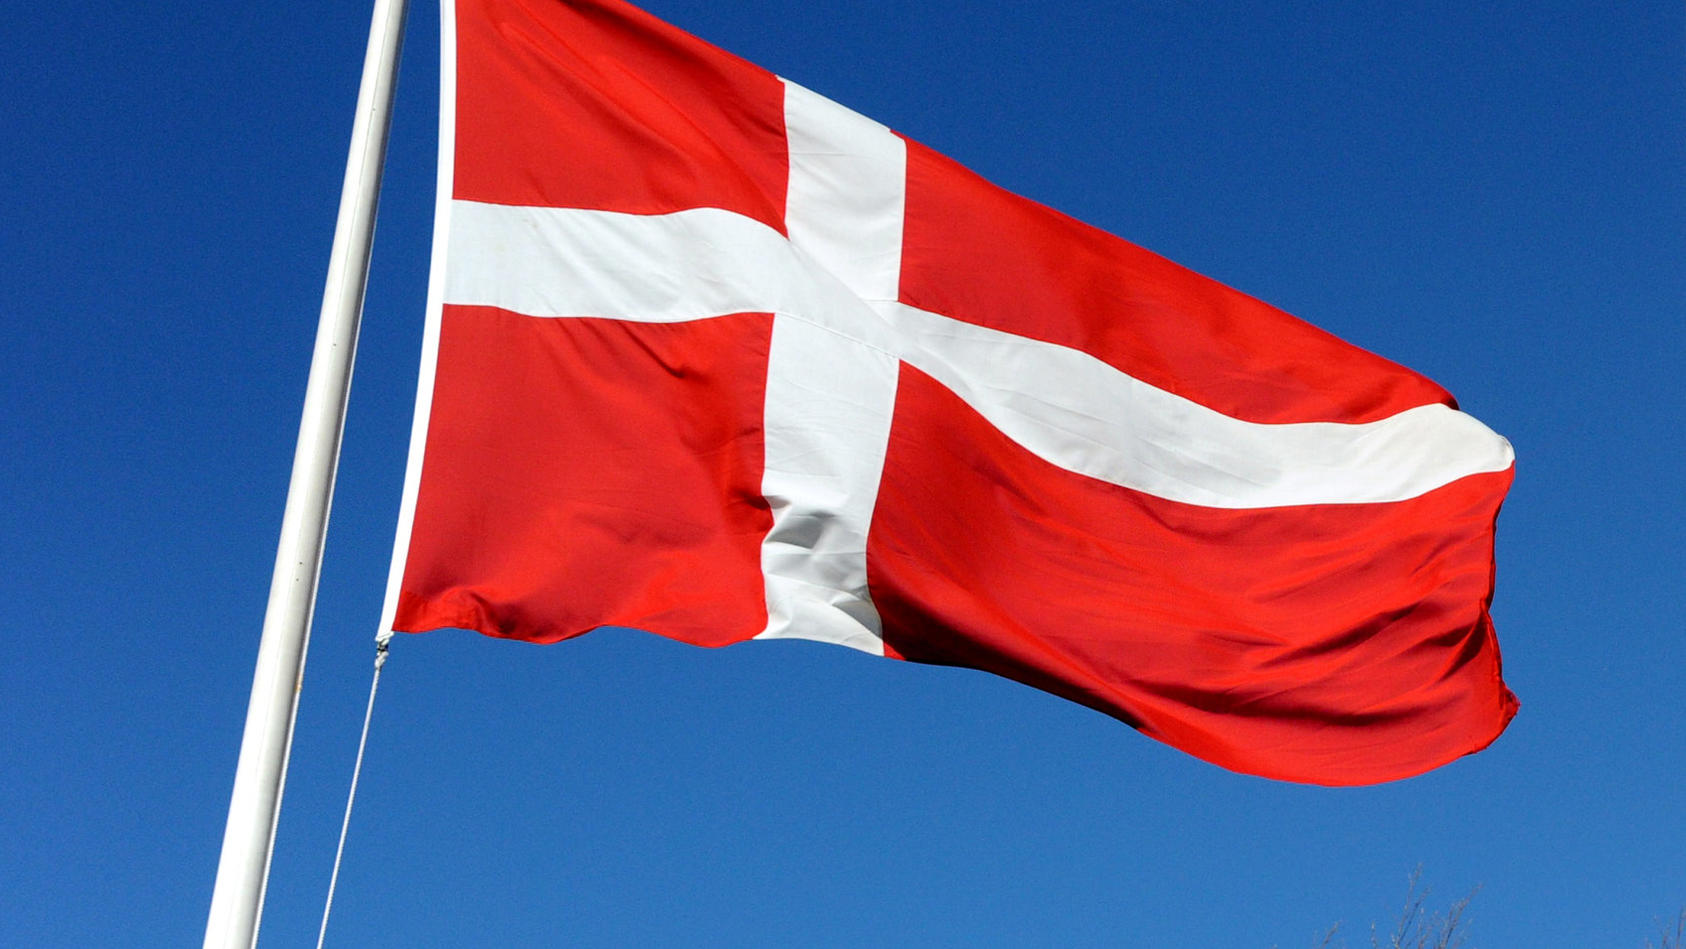 Dänische und deutsche Flagge